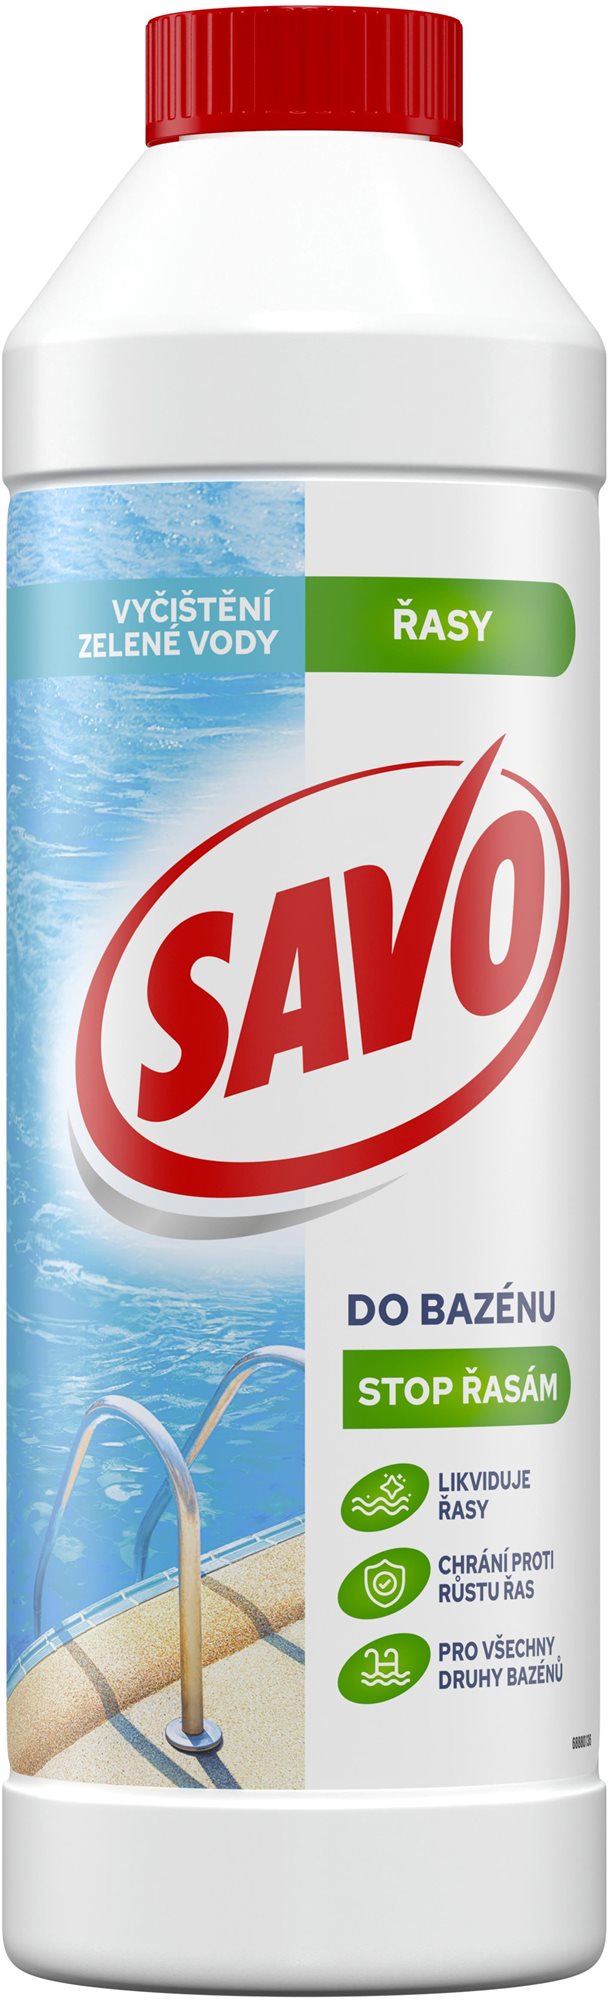 Bazénová chemie SAVO bazén - Stop řasám 900ml